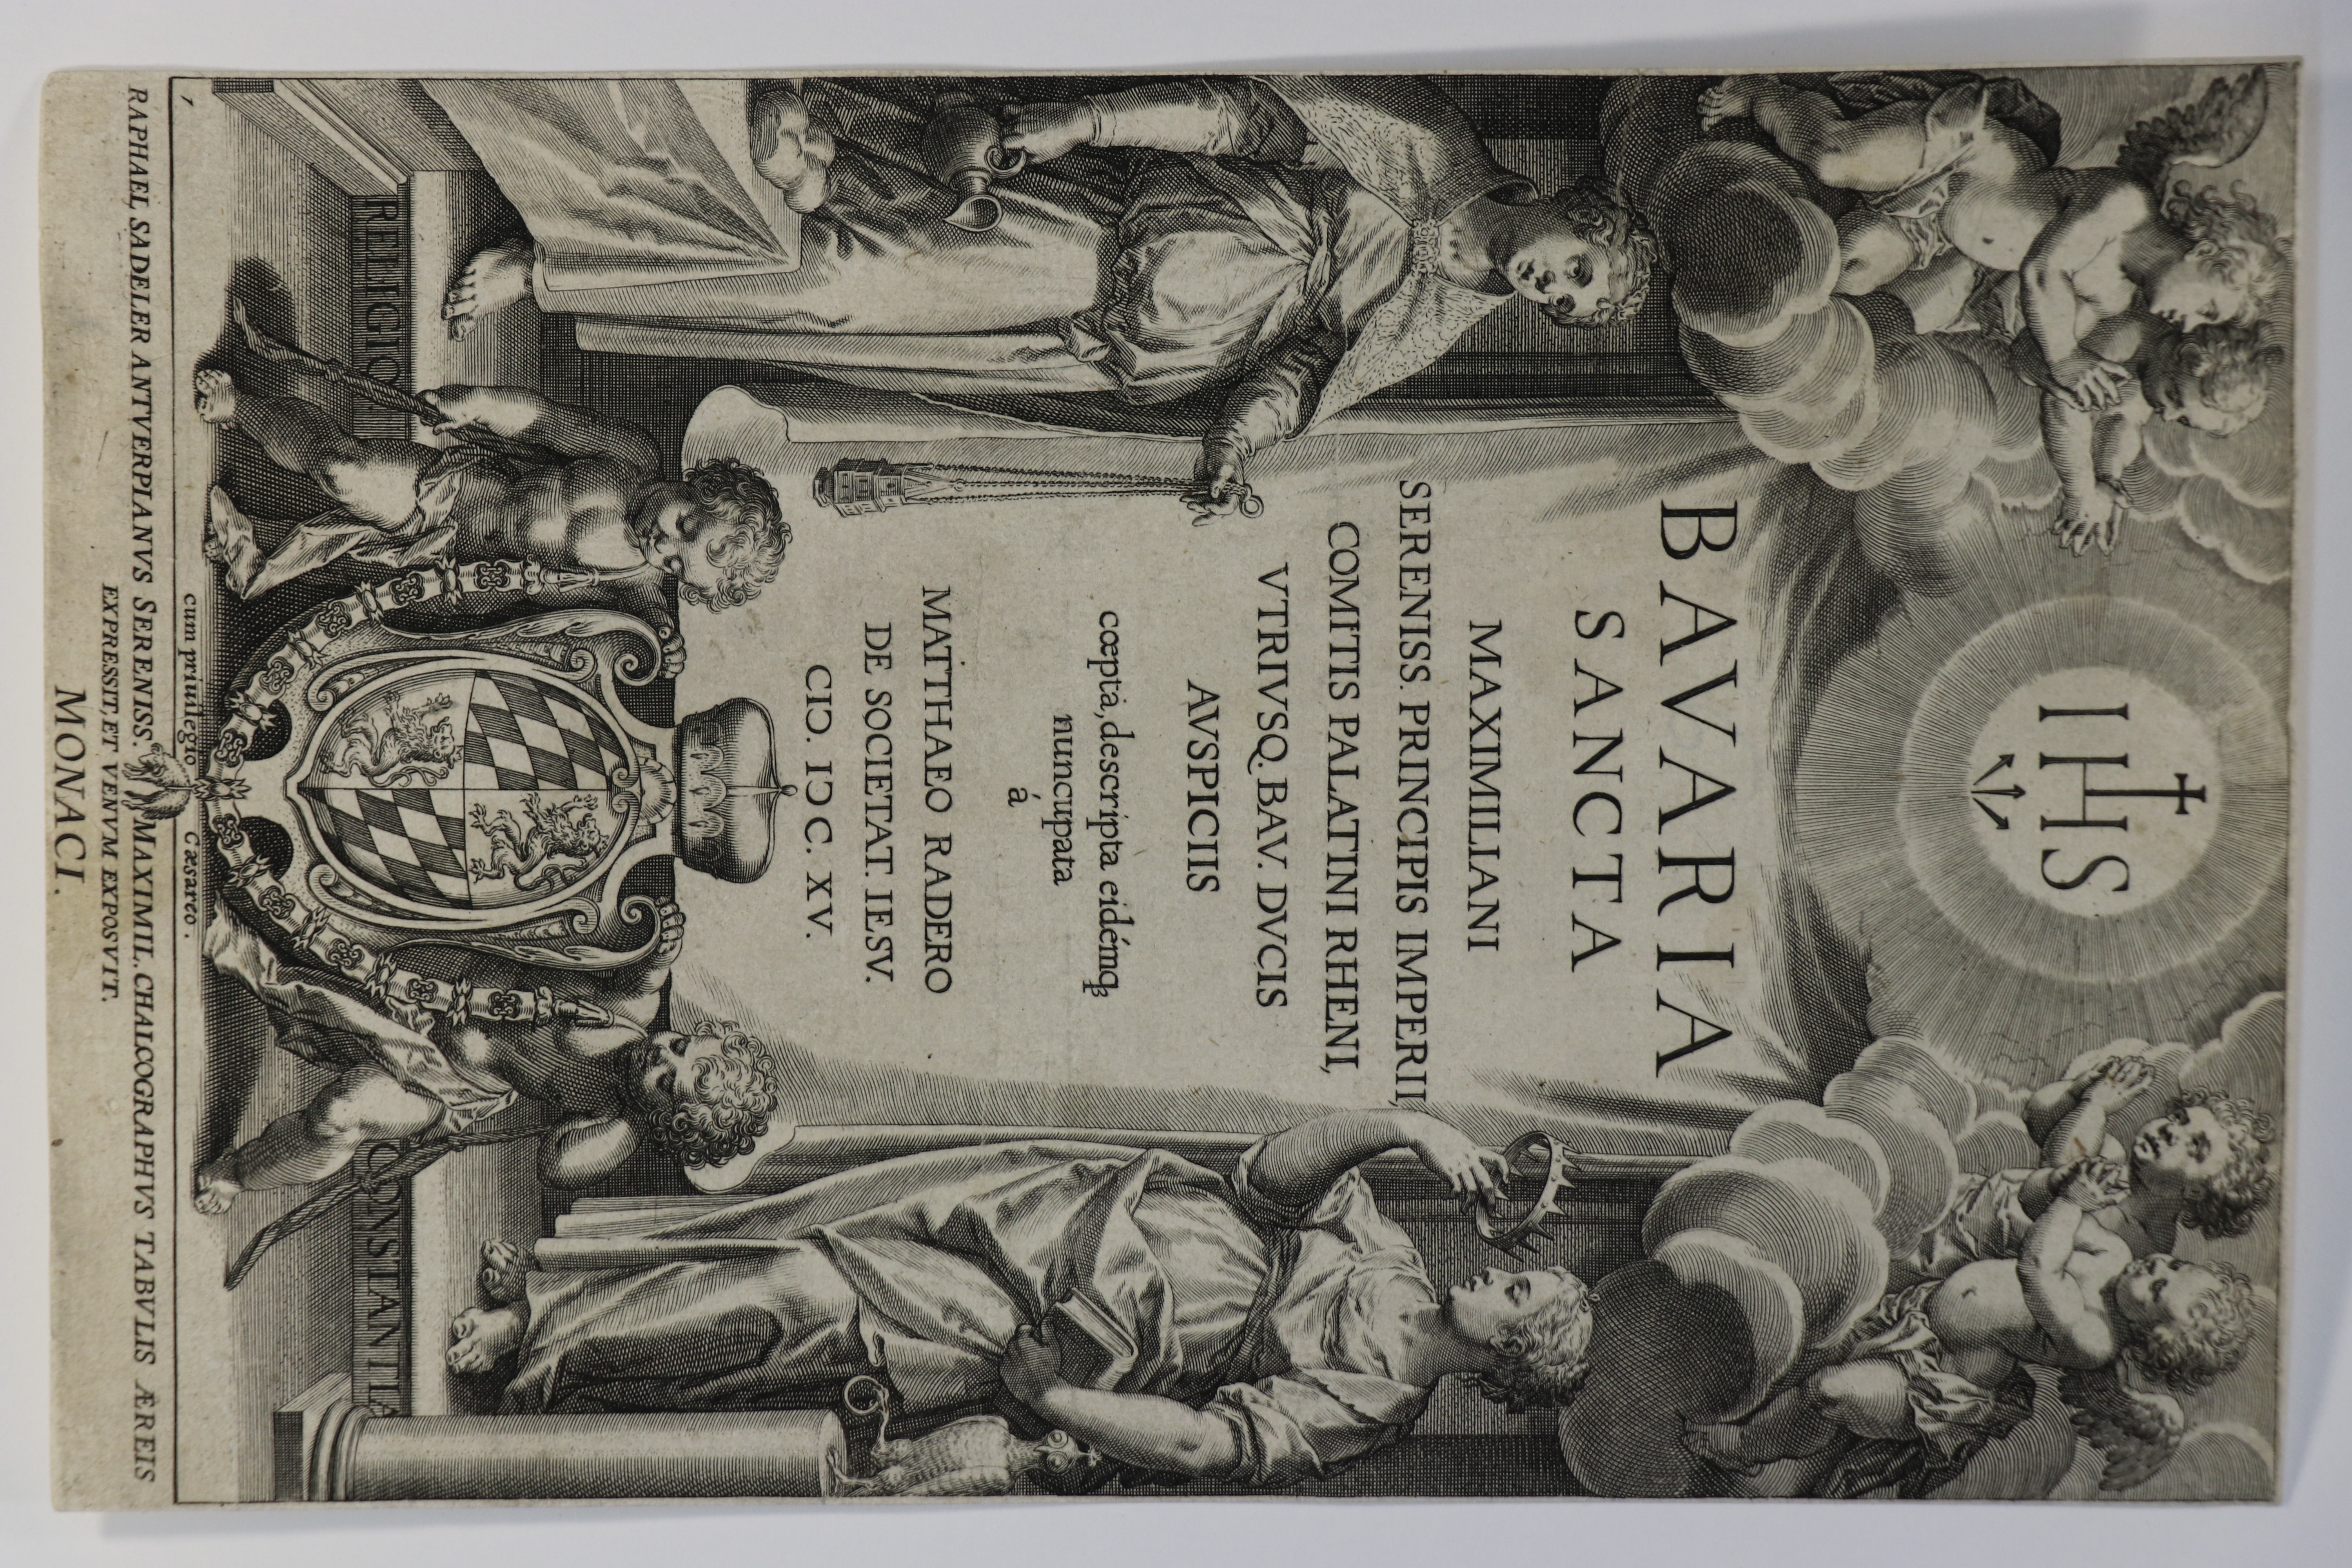 Raphael Sadeler der Ältere (1569-1632), Titelblatt zur Folge "Bavaria Sancta", München, 1615 (Städtisches Museum Schloss Rheydt CC BY-SA)